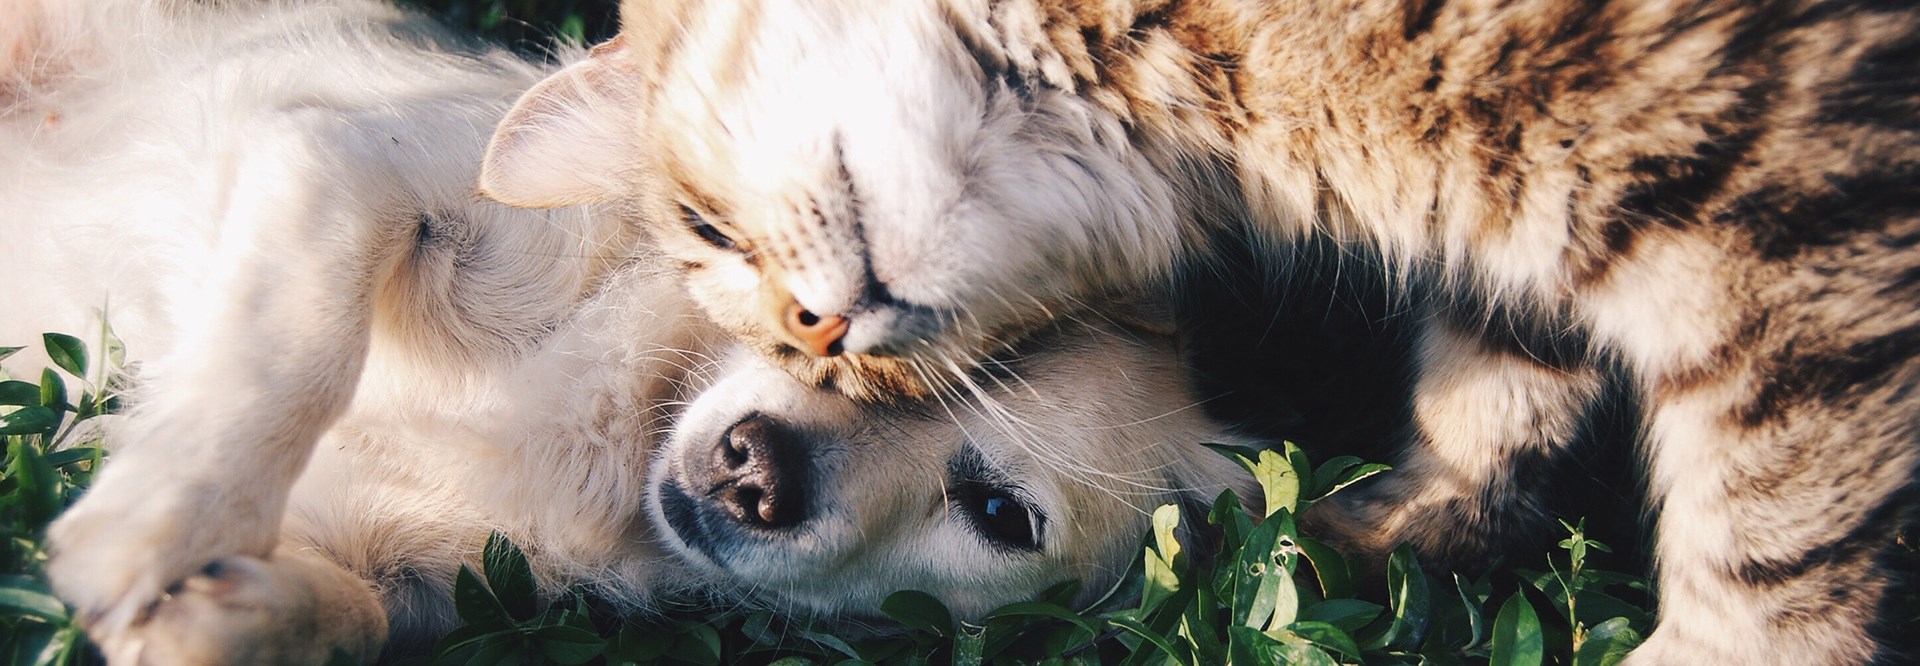 En hund med ljus päls som ligger ner på gräsmattan tillsammans med en katt med brunspräcklig päls som lägger sitt huvud mot hundens.